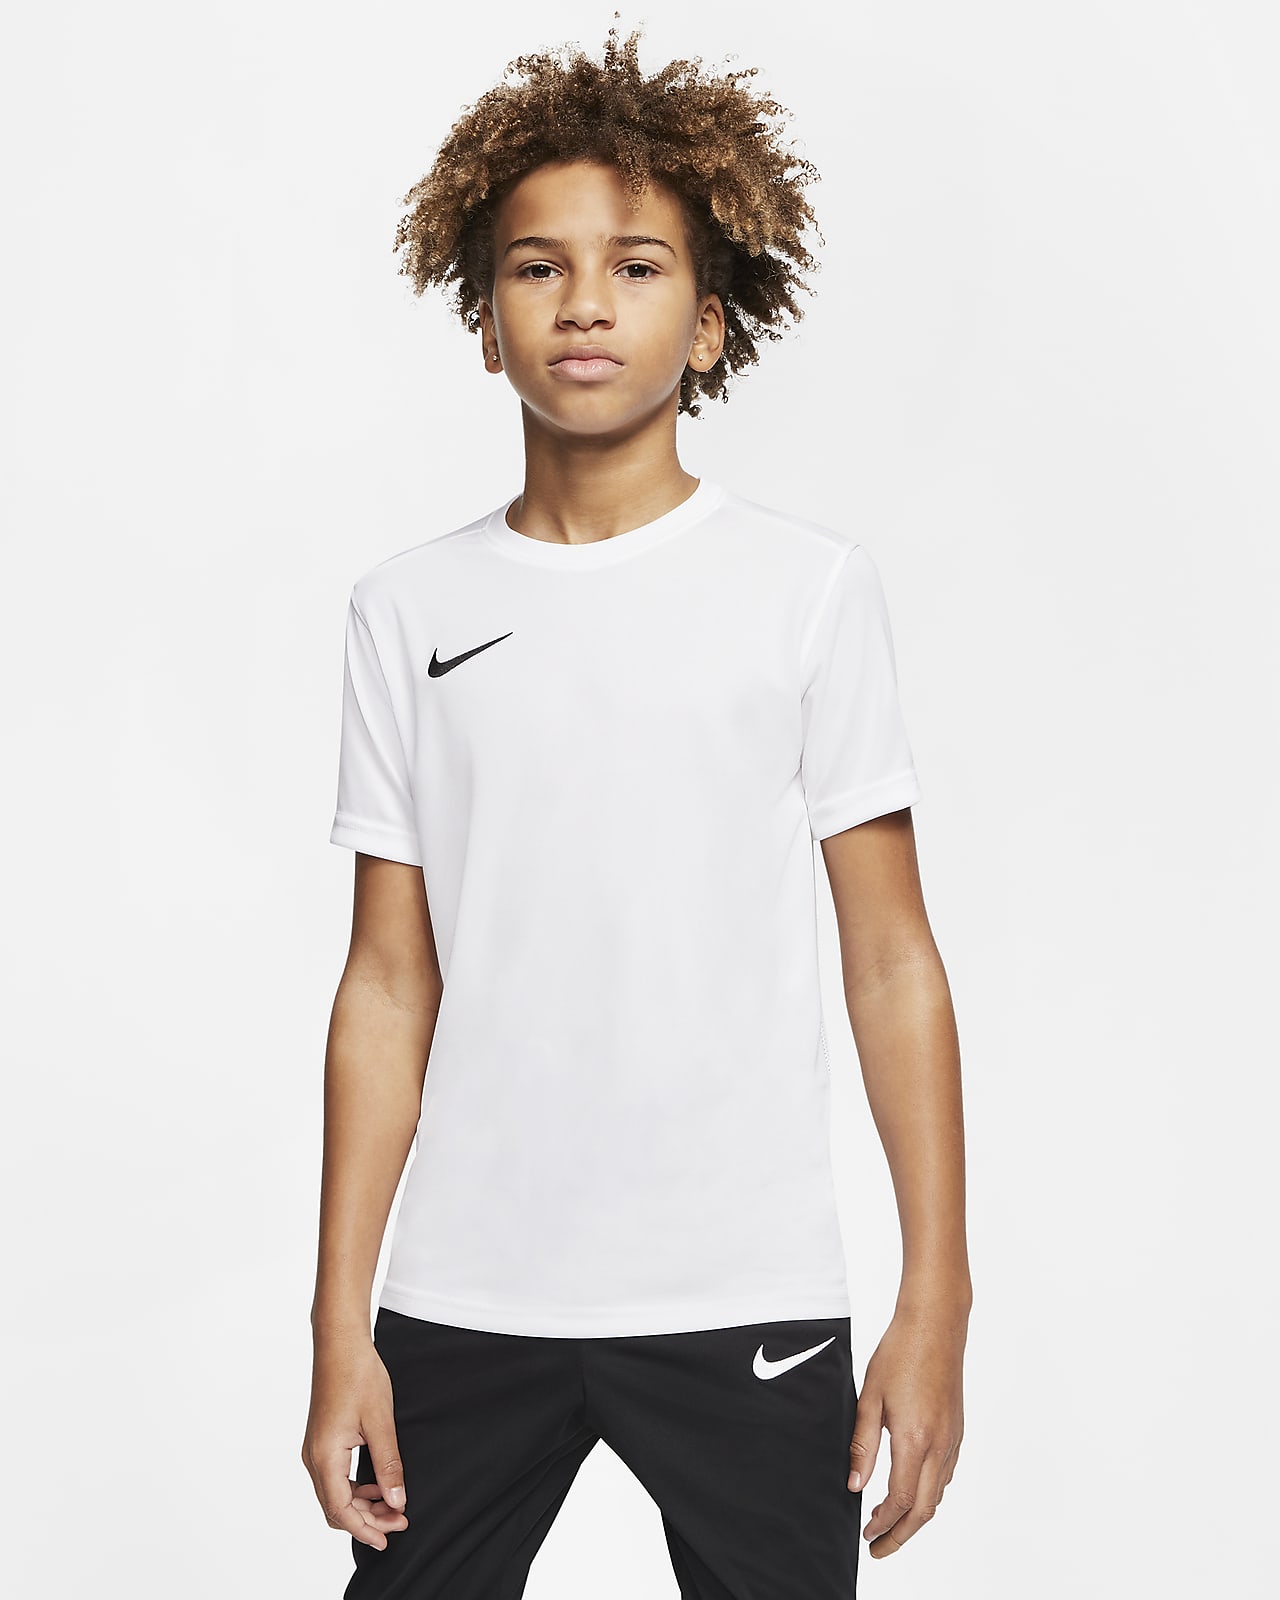 Nike公式 ナイキ Dri Fit パーク 7 ジュニア サッカーユニフォーム オンラインストア 通販サイト